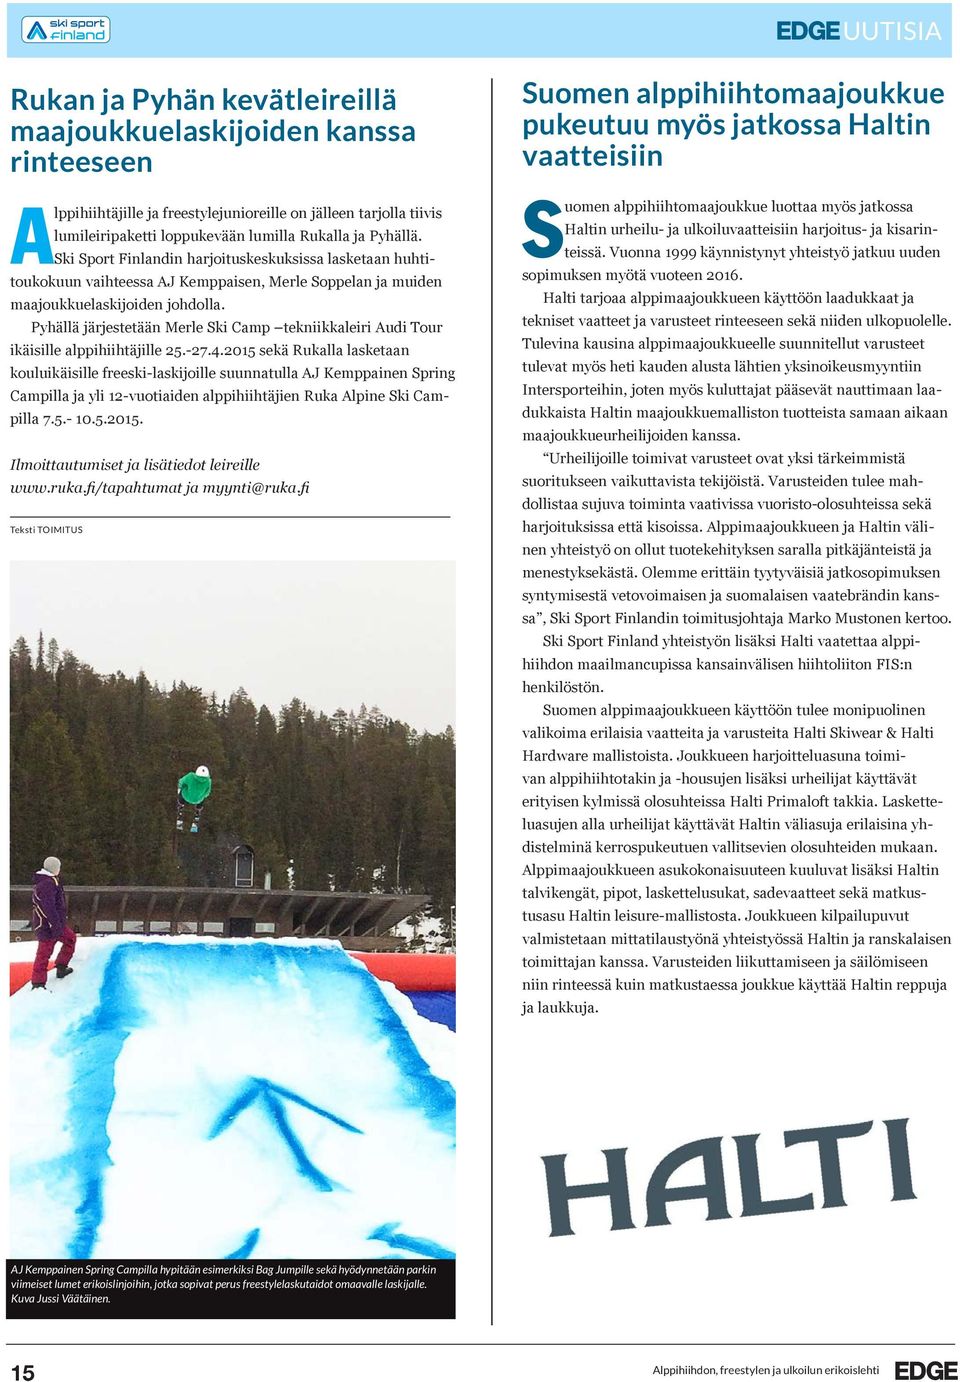 Pyhällä järjestetään Merle Ski Camp tekniikkaleiri Audi Tour ikäisille alppihiihtäjille 25.-27.4.